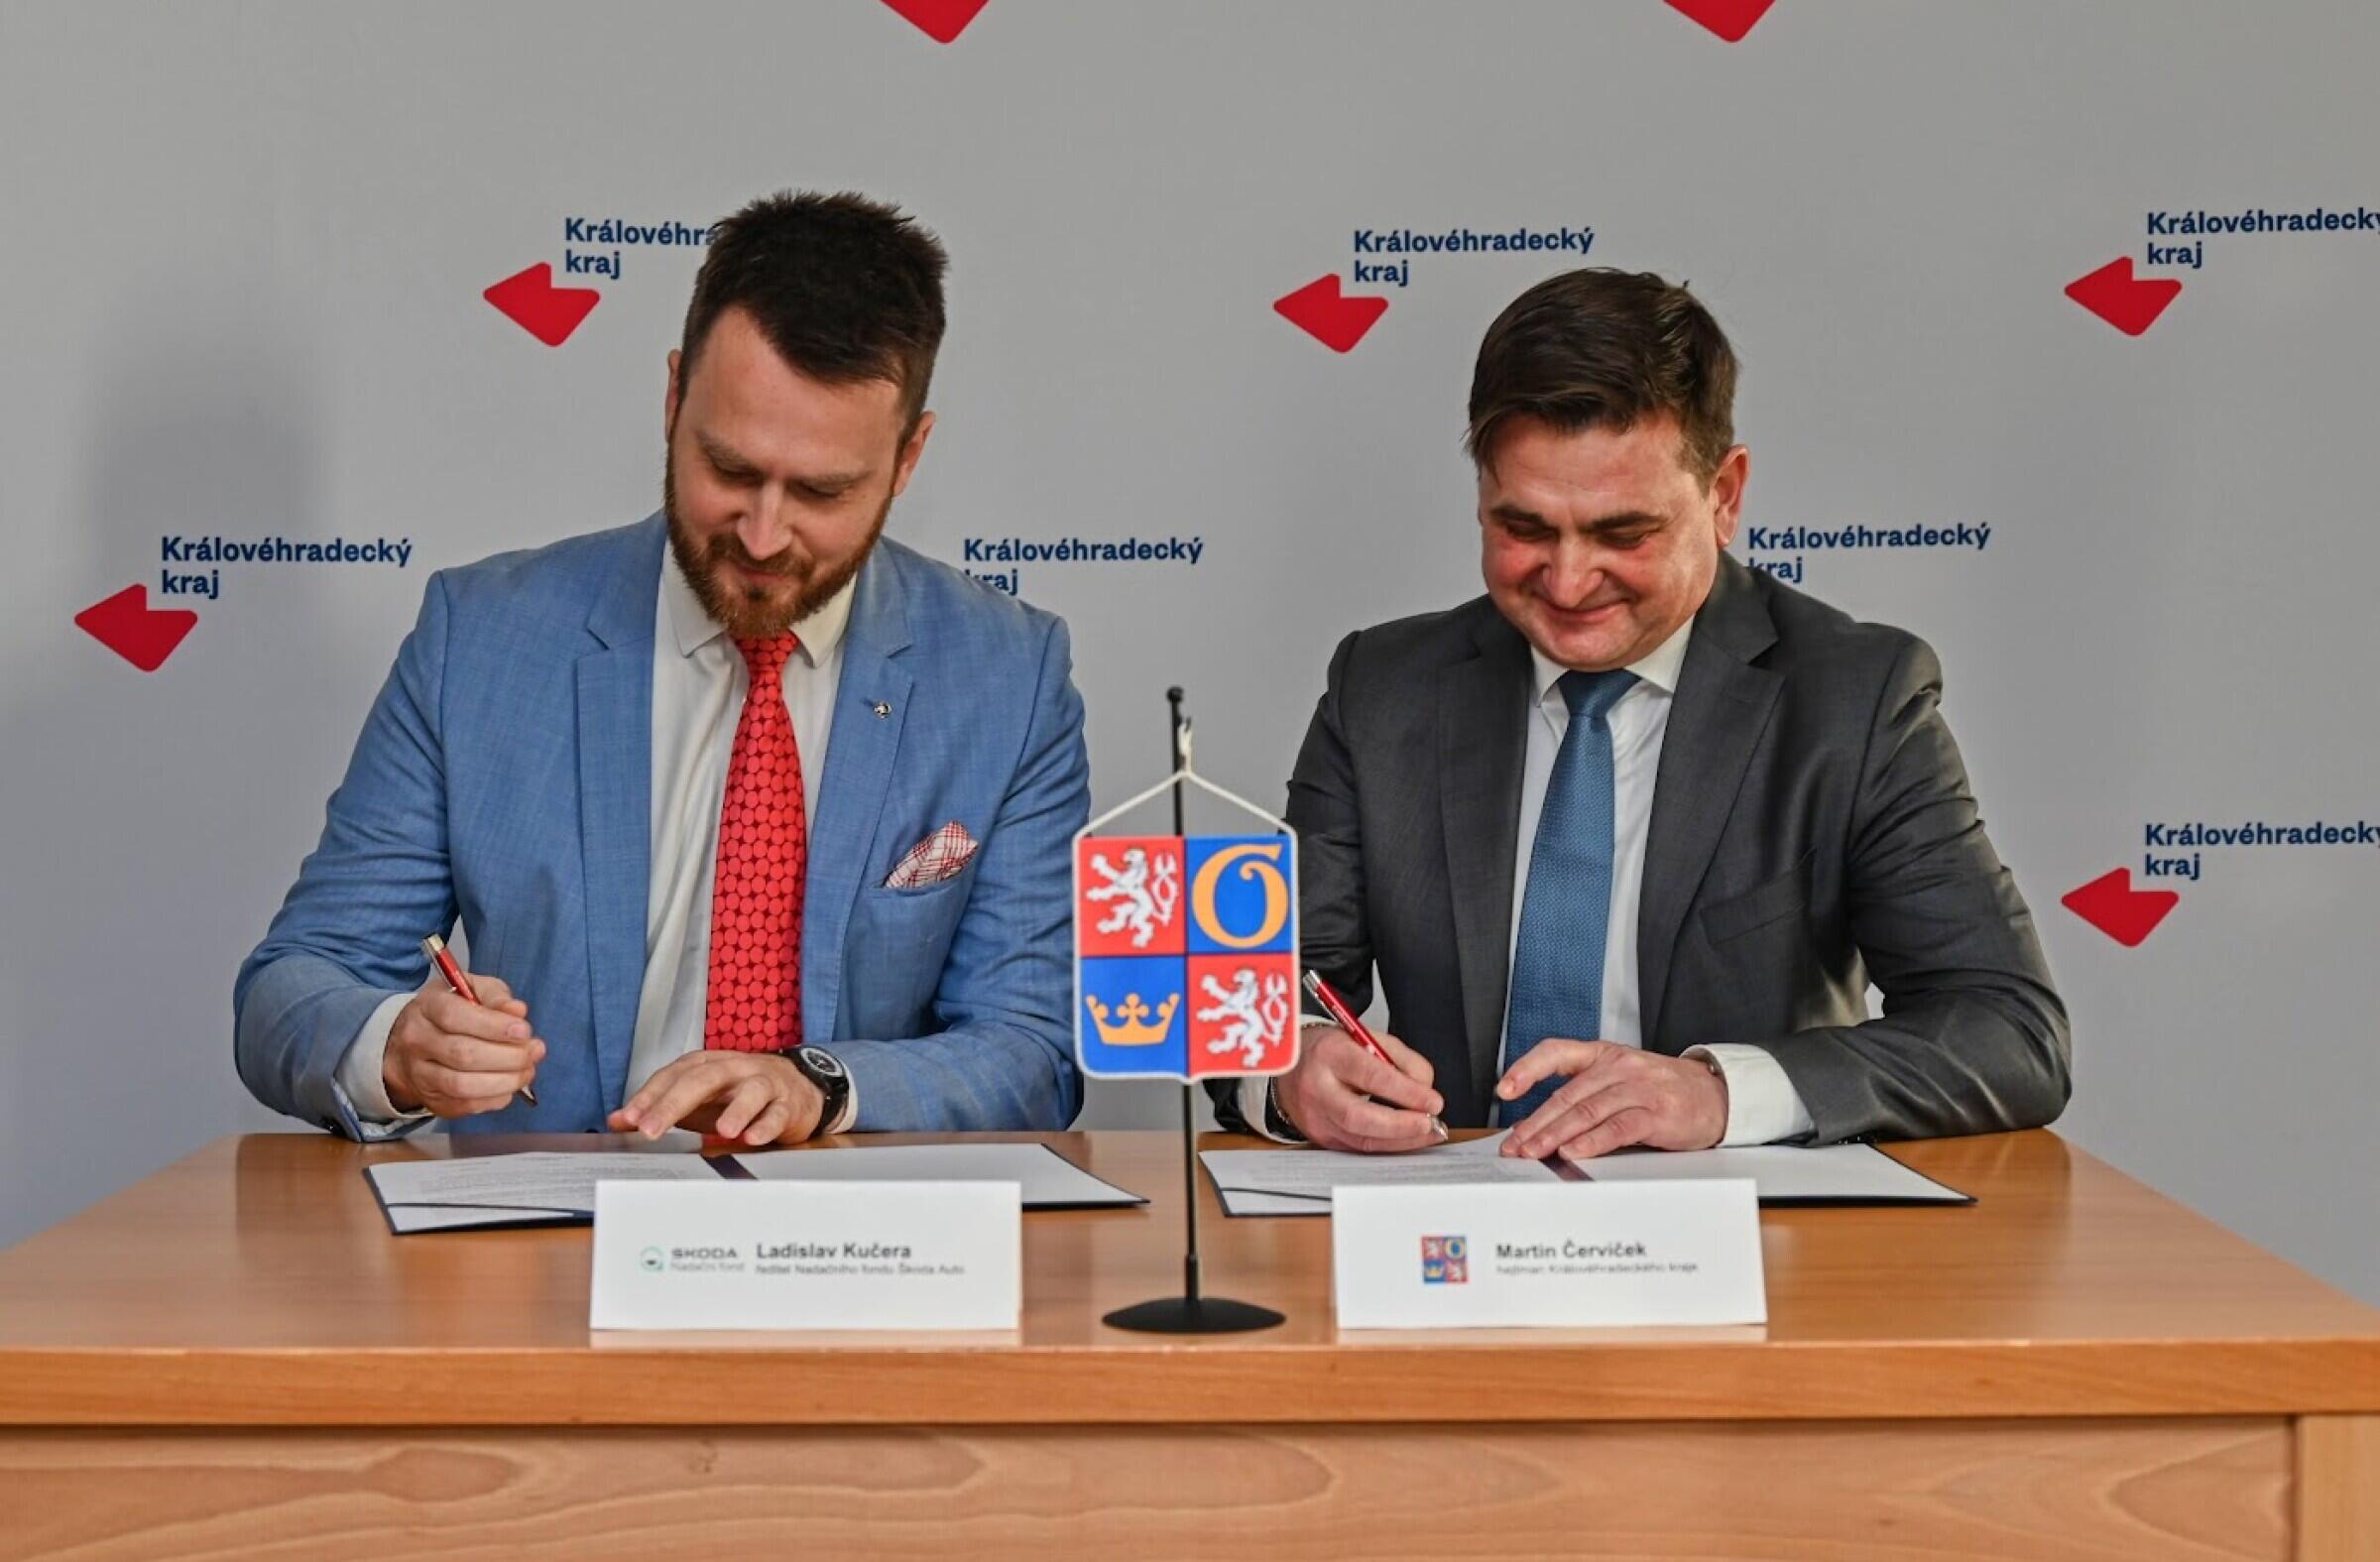 Podepsali jsme memorandum o spolupráci s Královéhradeckým krajem